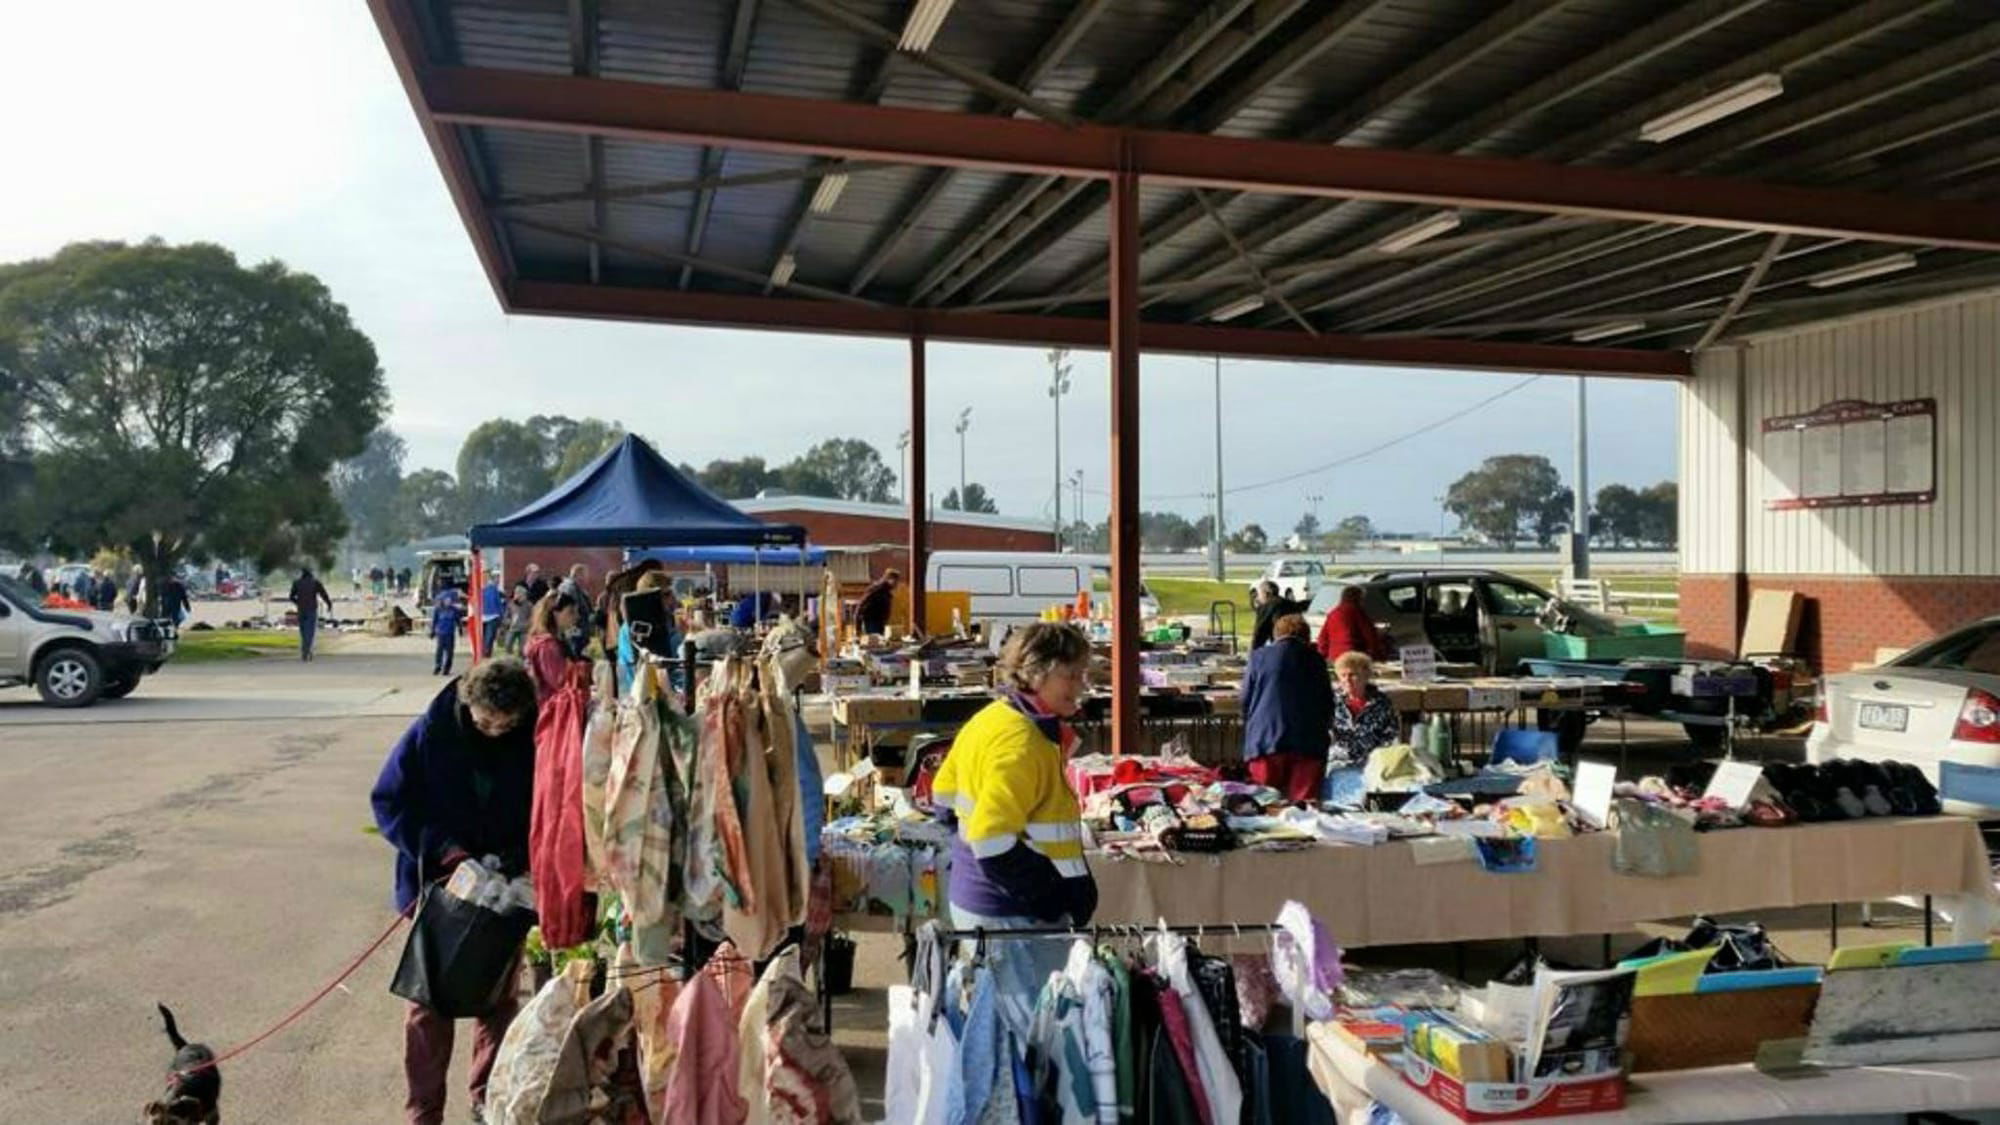 Wangaratta Community Market